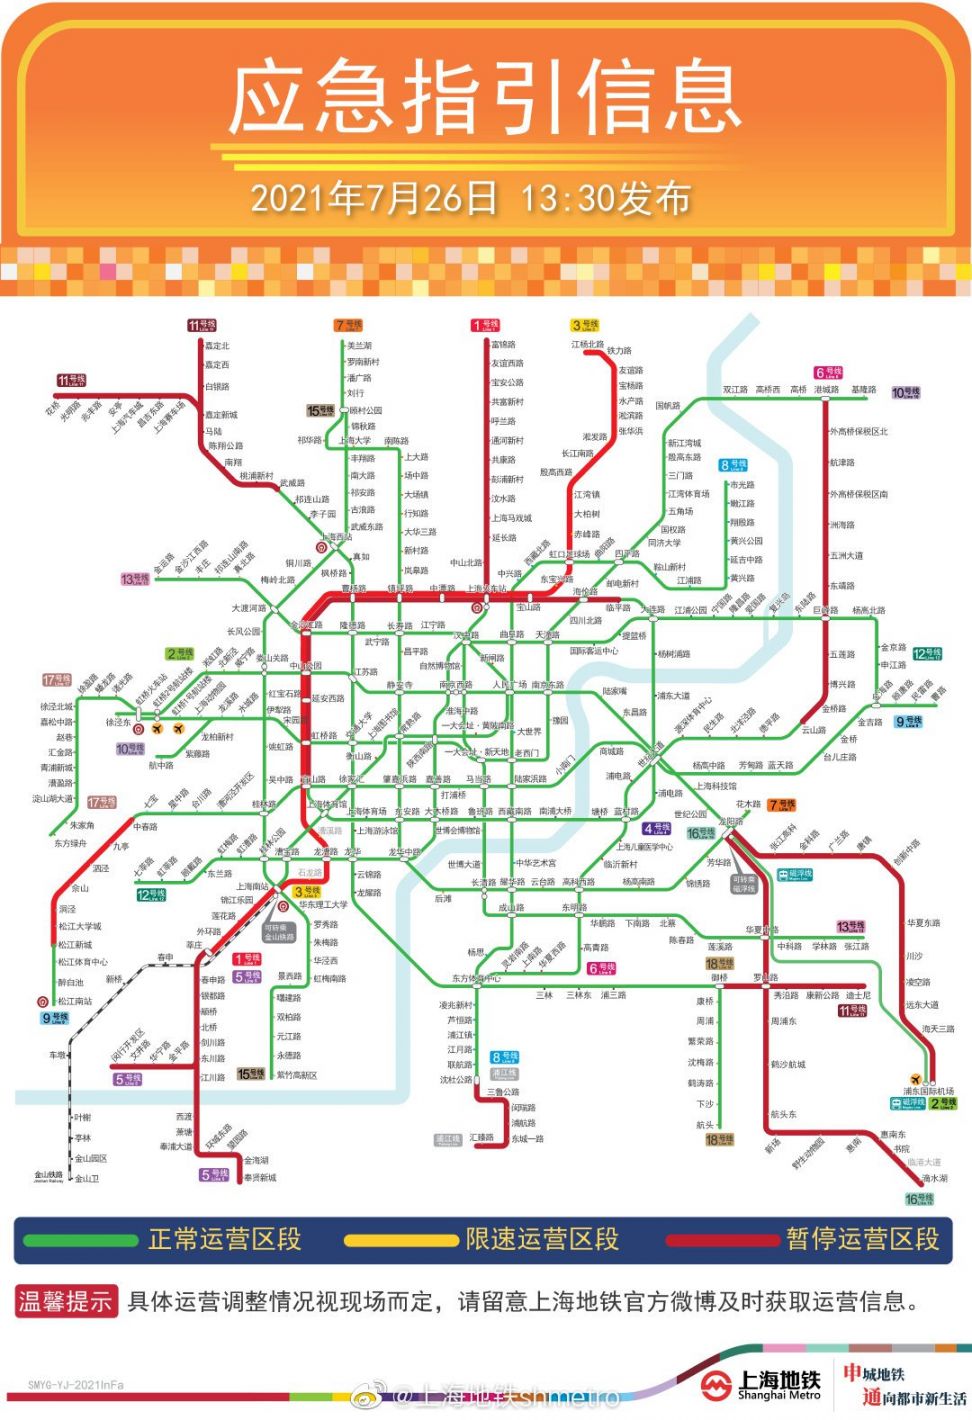 输入框回复地铁恢复,查看上海地铁恢复运营时间及线路;回复台风,即可